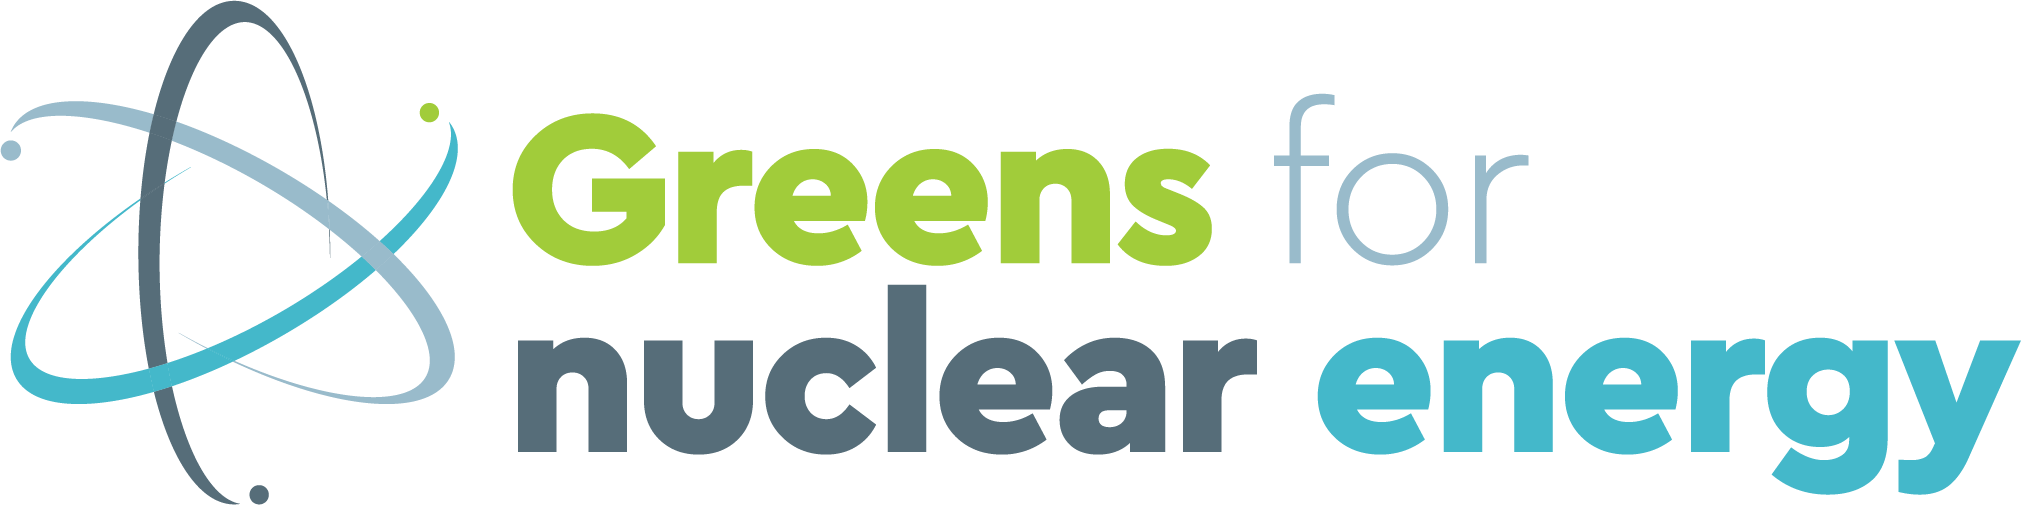 Les Verts pour l'énergie nucléaire